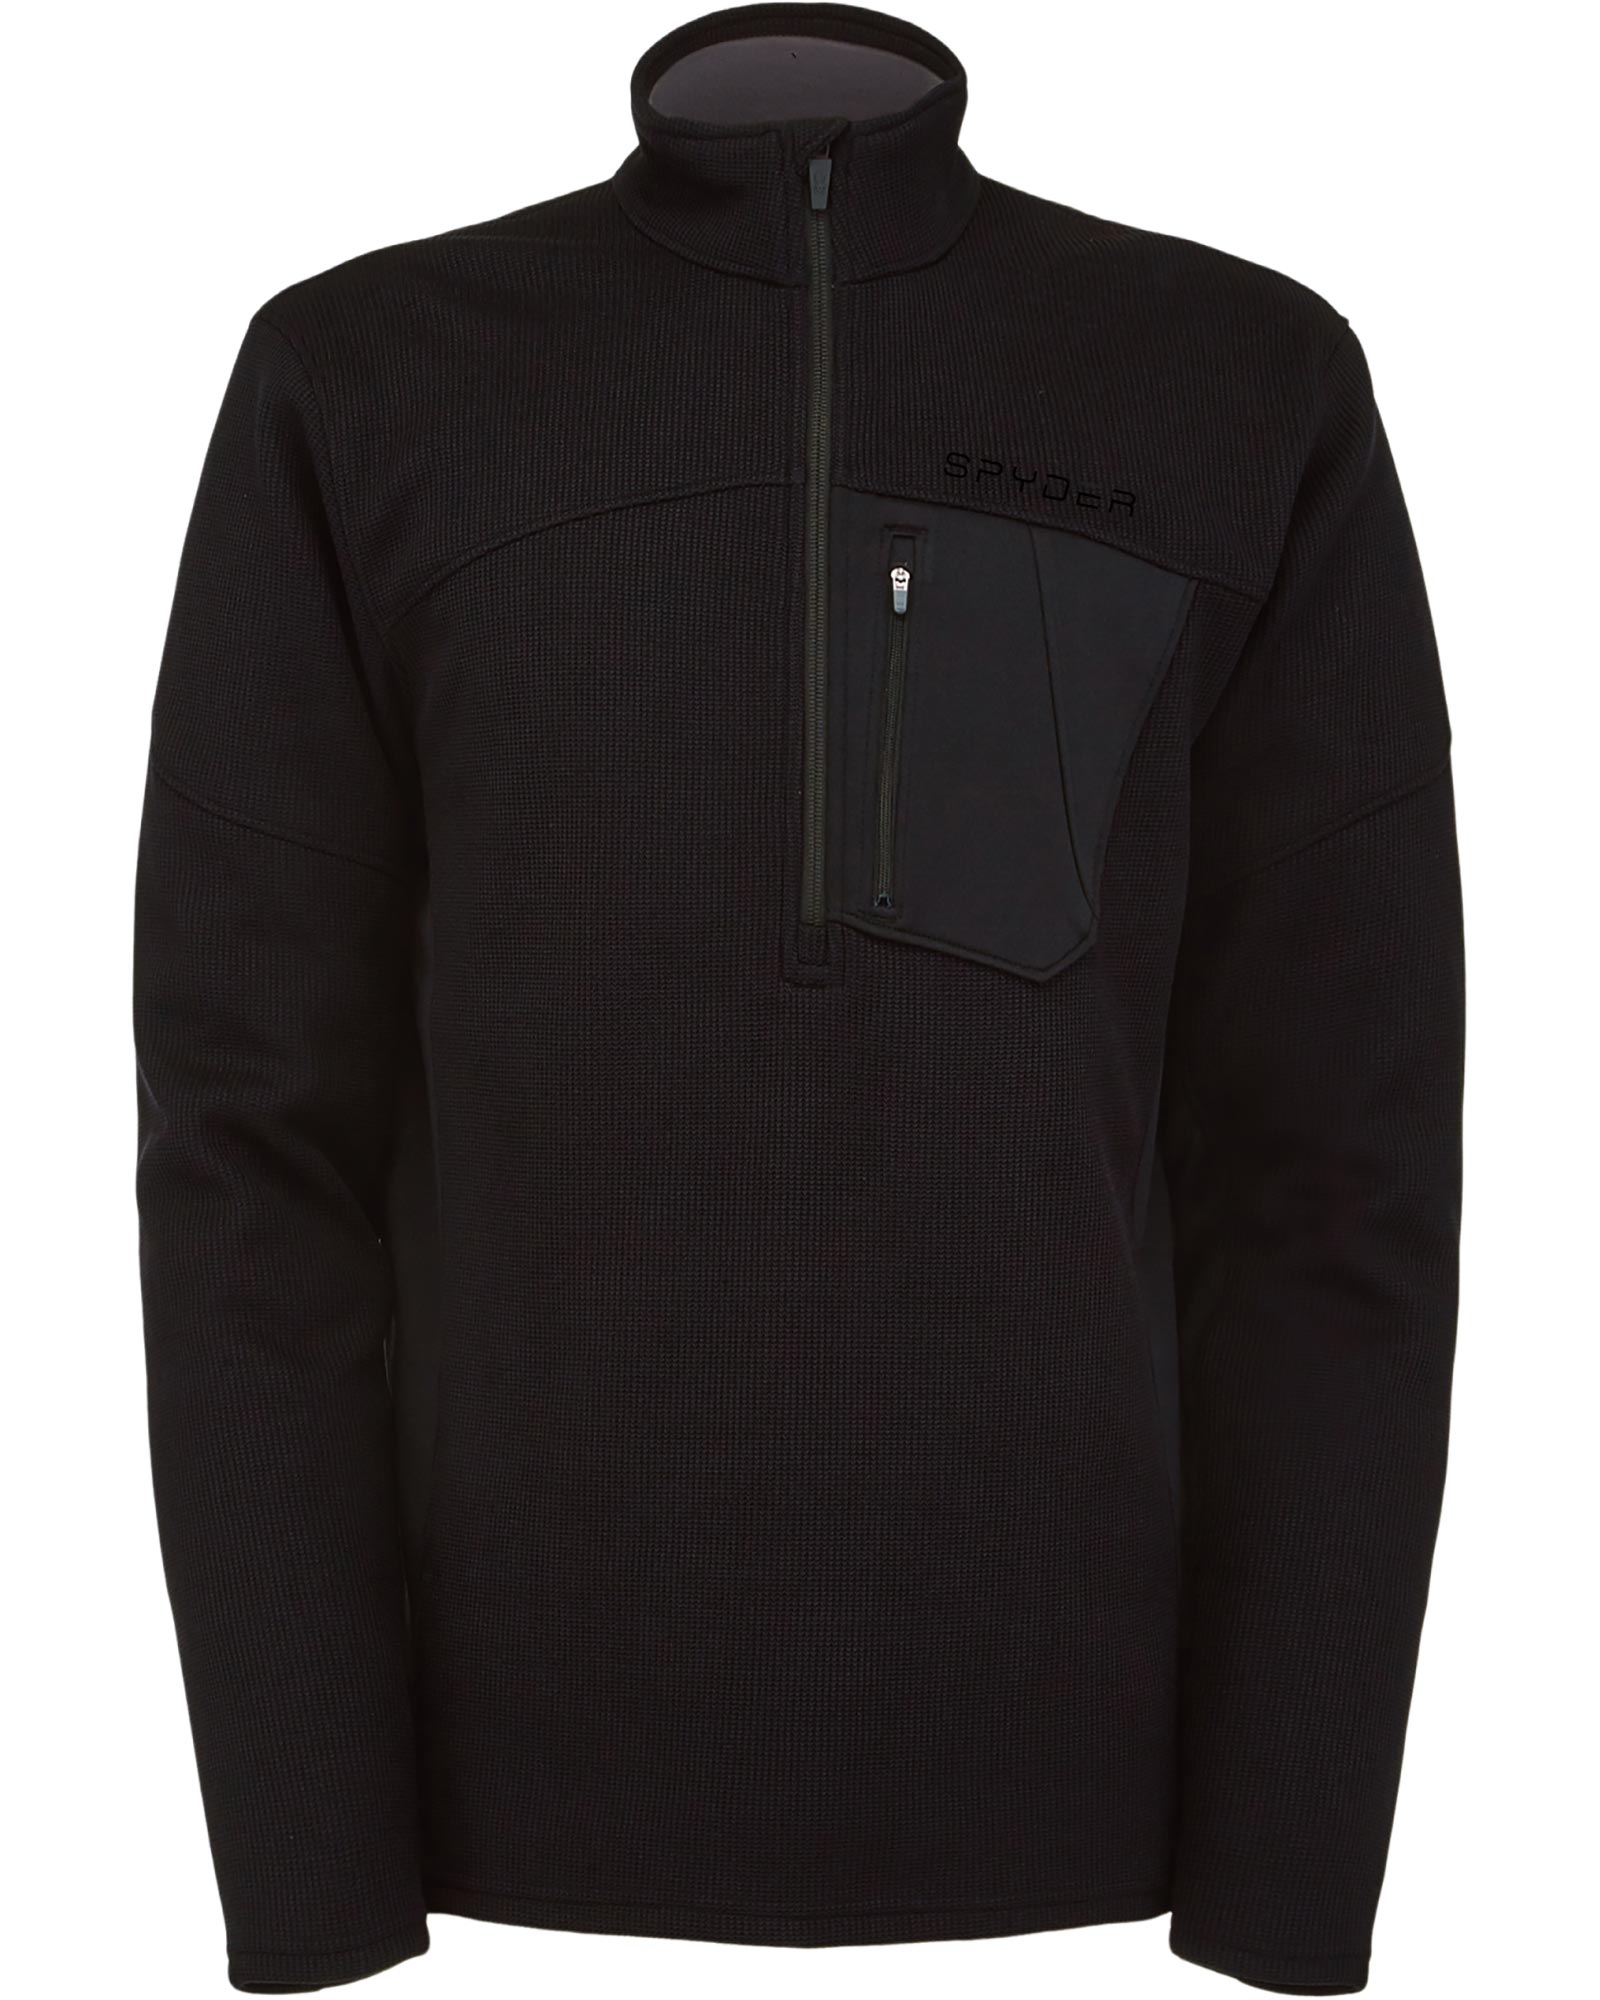 Product image of Spyder Bandit Men's Half Zip Pullover